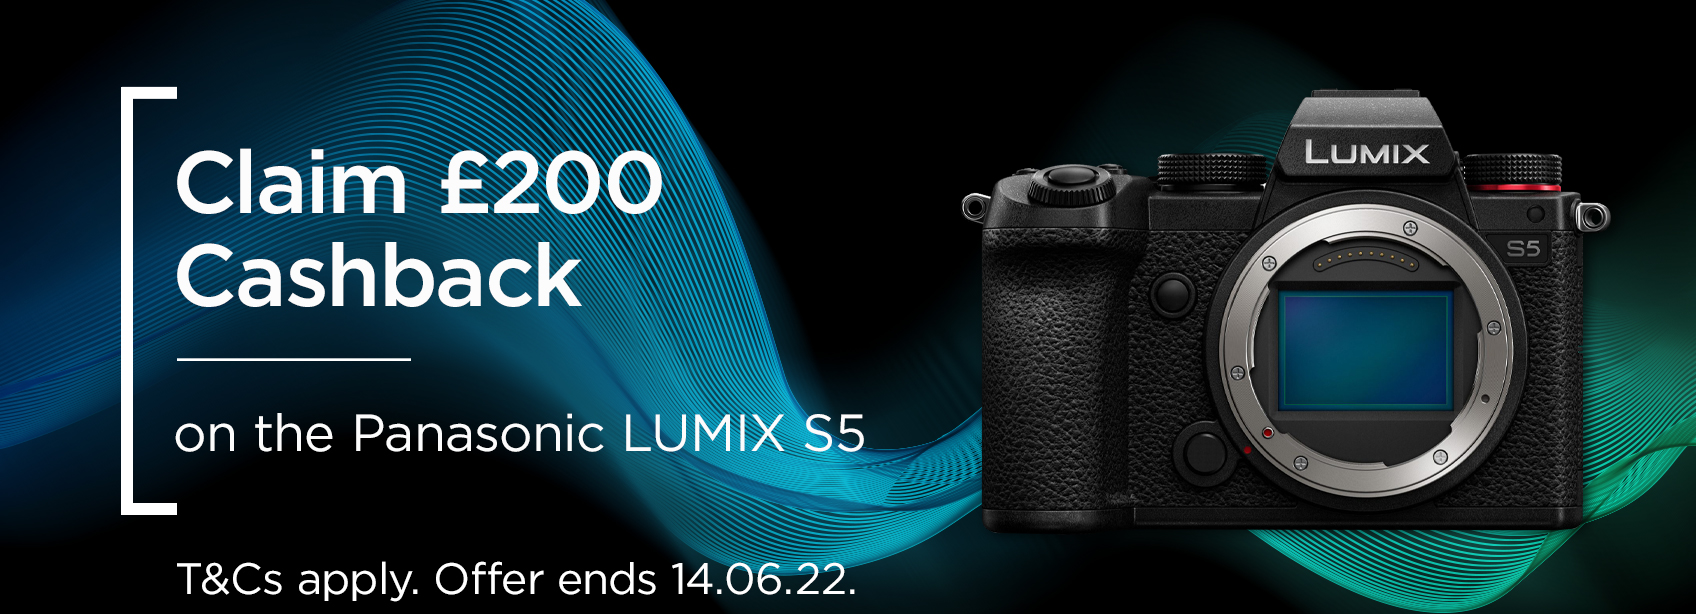 Claim £200 cashback on the Panasonic LUMIX S5